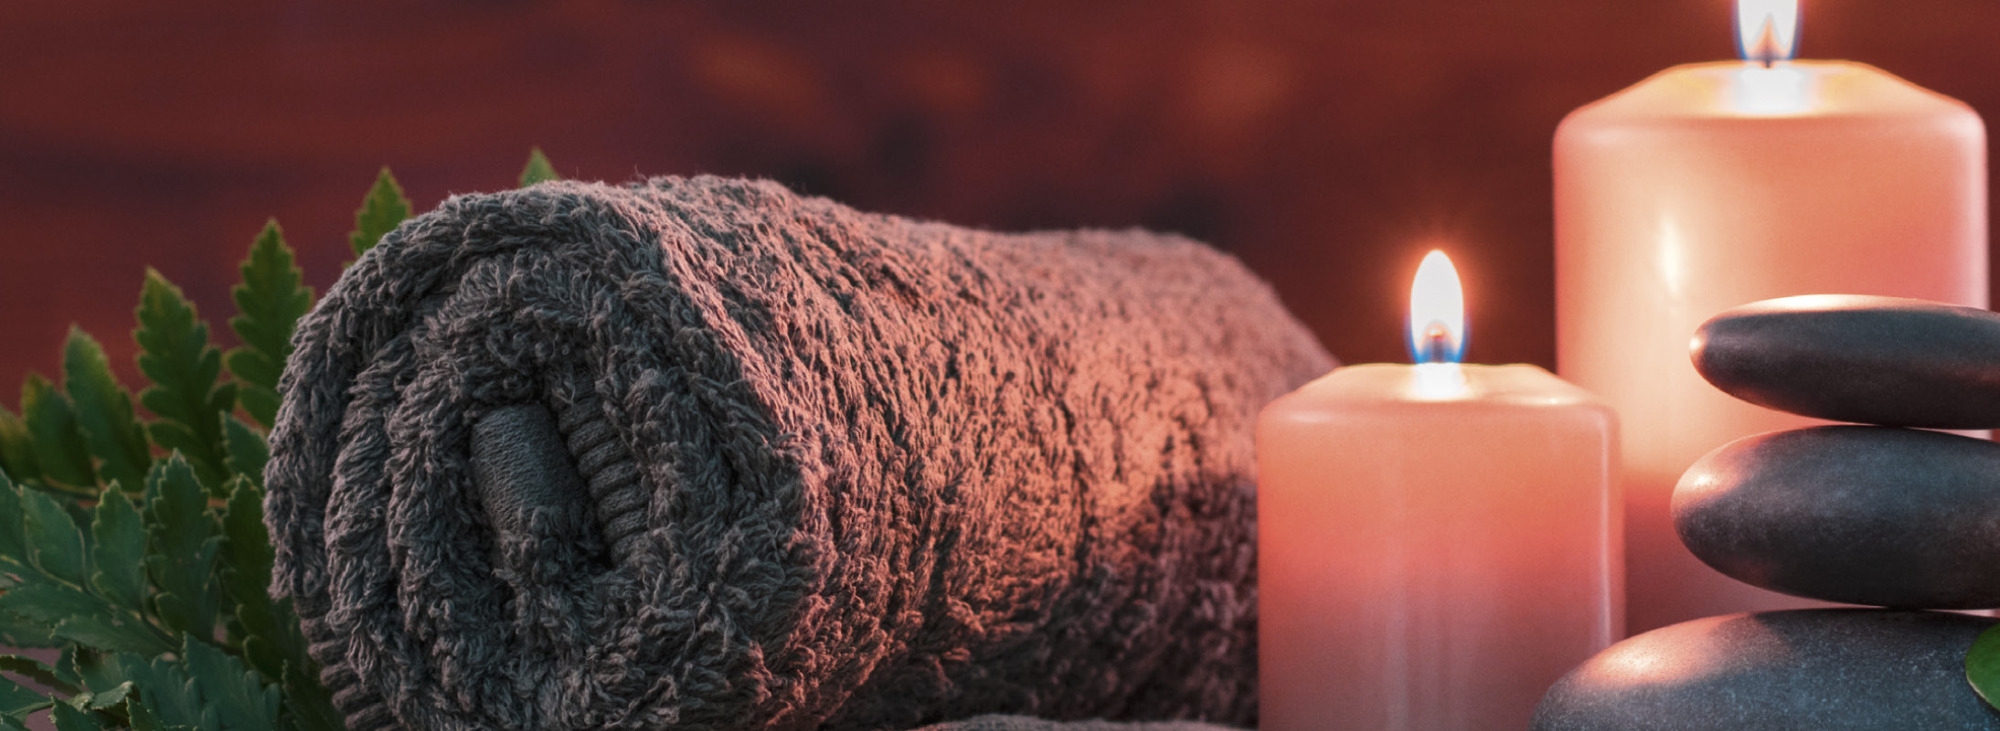 Eingerolltes Handtuch, brennende Kerzen und aufeinander liegende Steine